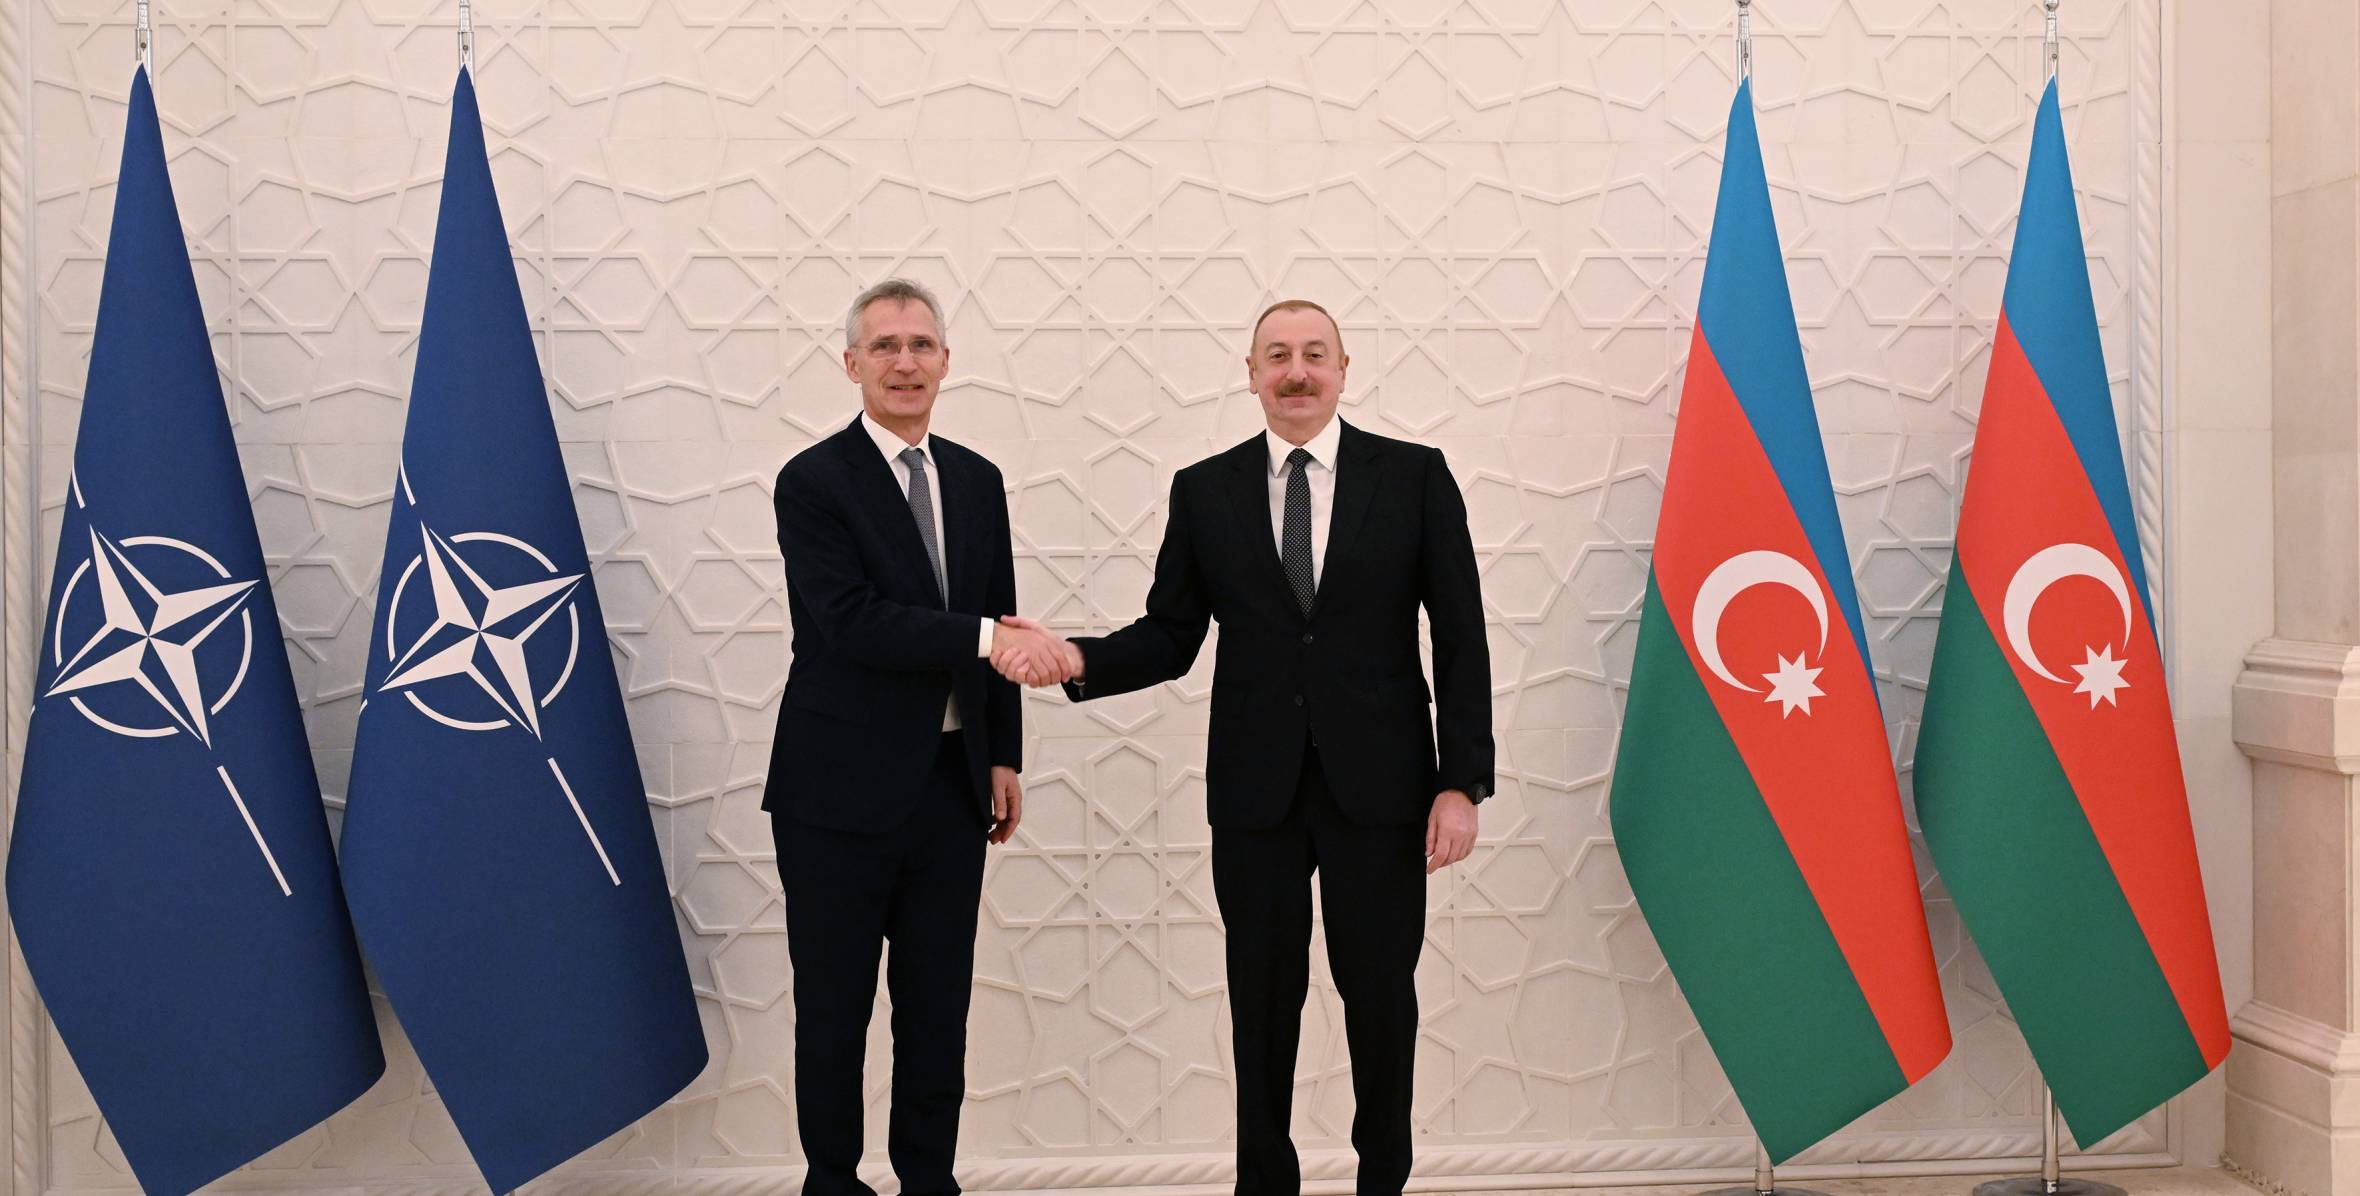 Президент Ильхам Алиев и Генеральный секретарь НАТО выступили с заявлениями для прессы - ОБНОВЛЕНО